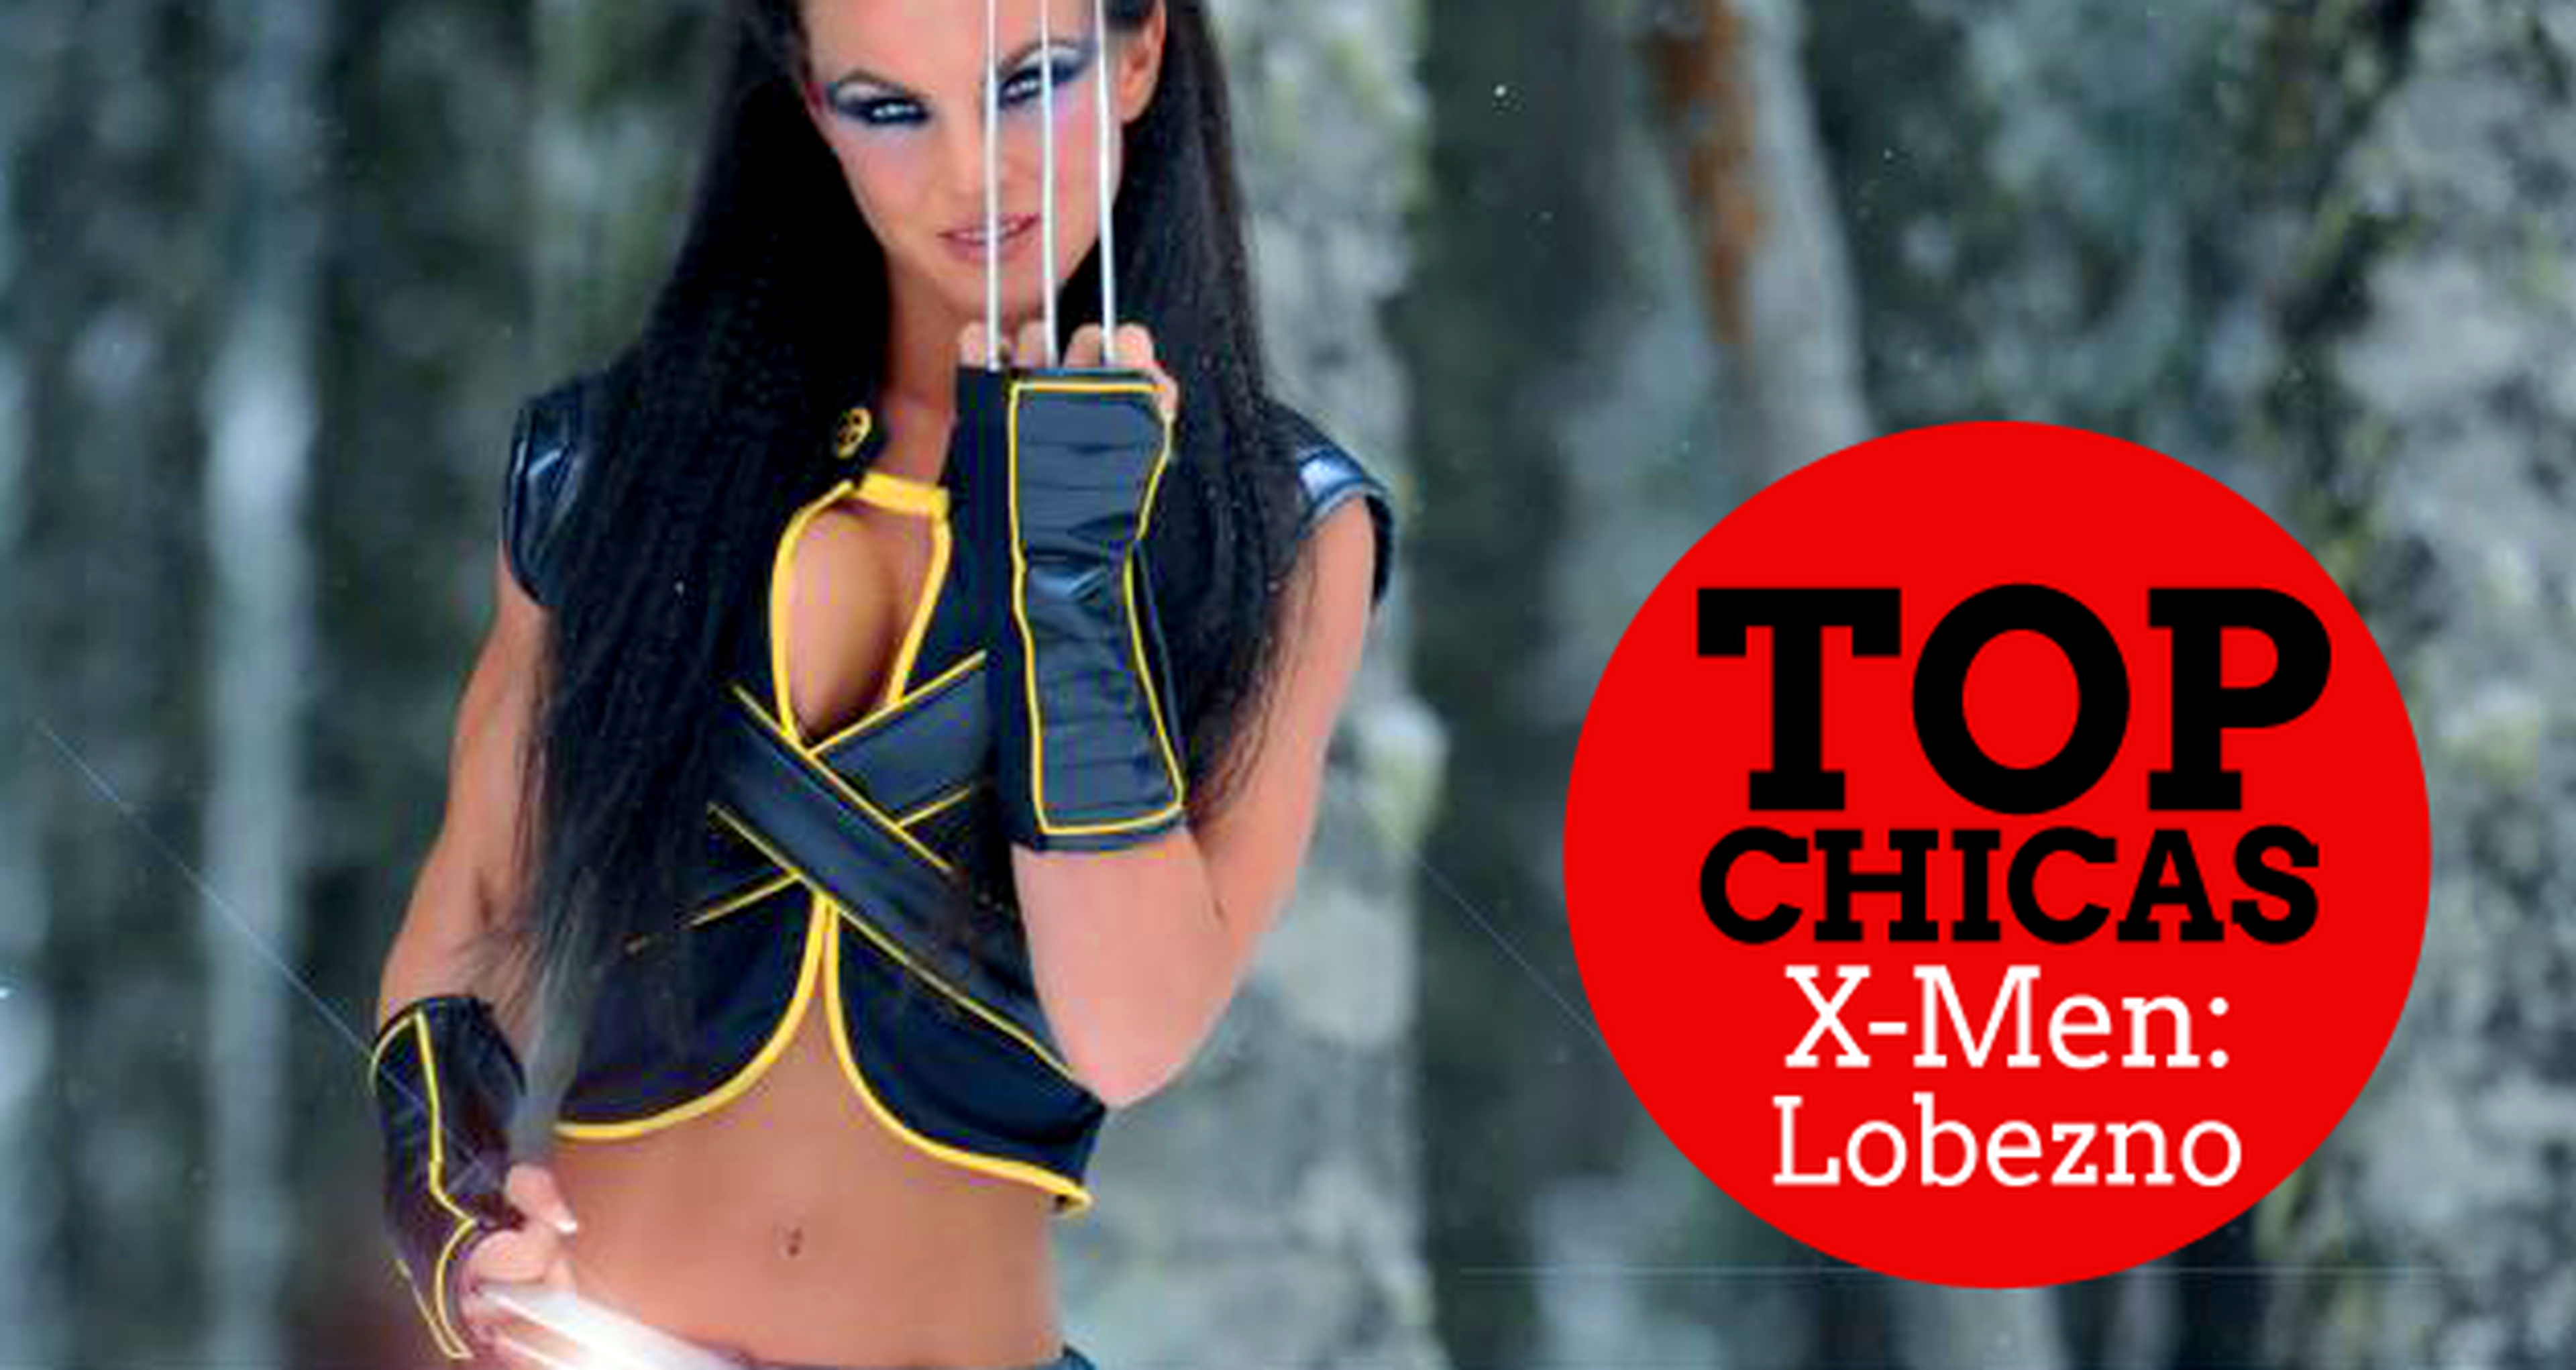 Top chicas X-Men: Lobezno